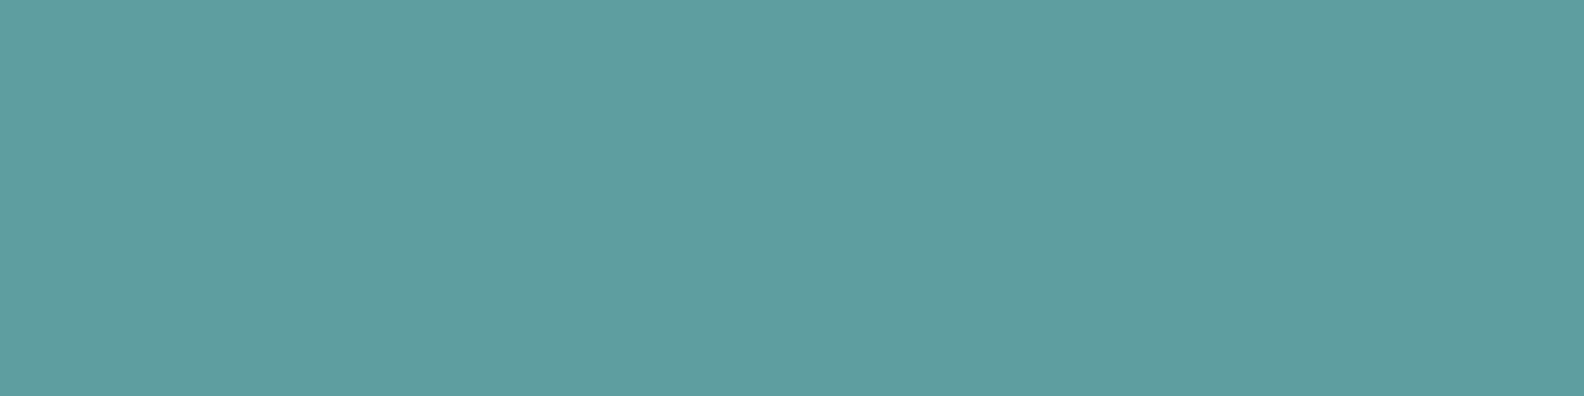 1584x396 Cadet Blue Solid Color Background